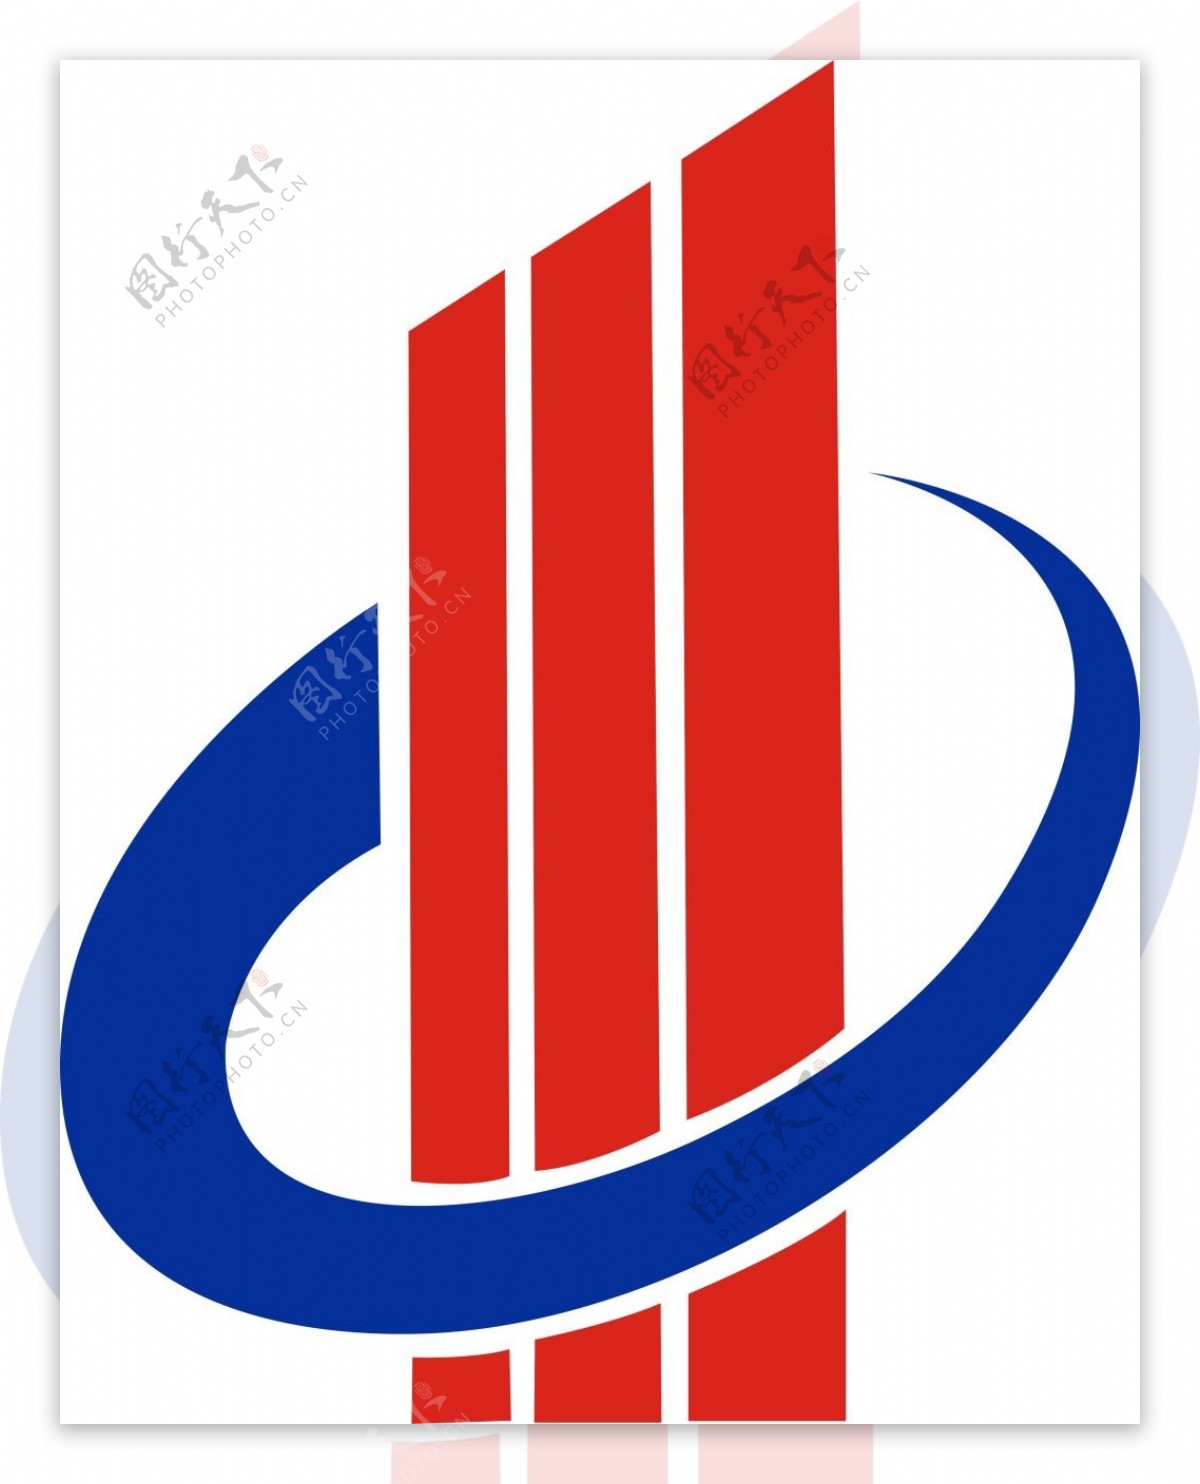 中成集团logo